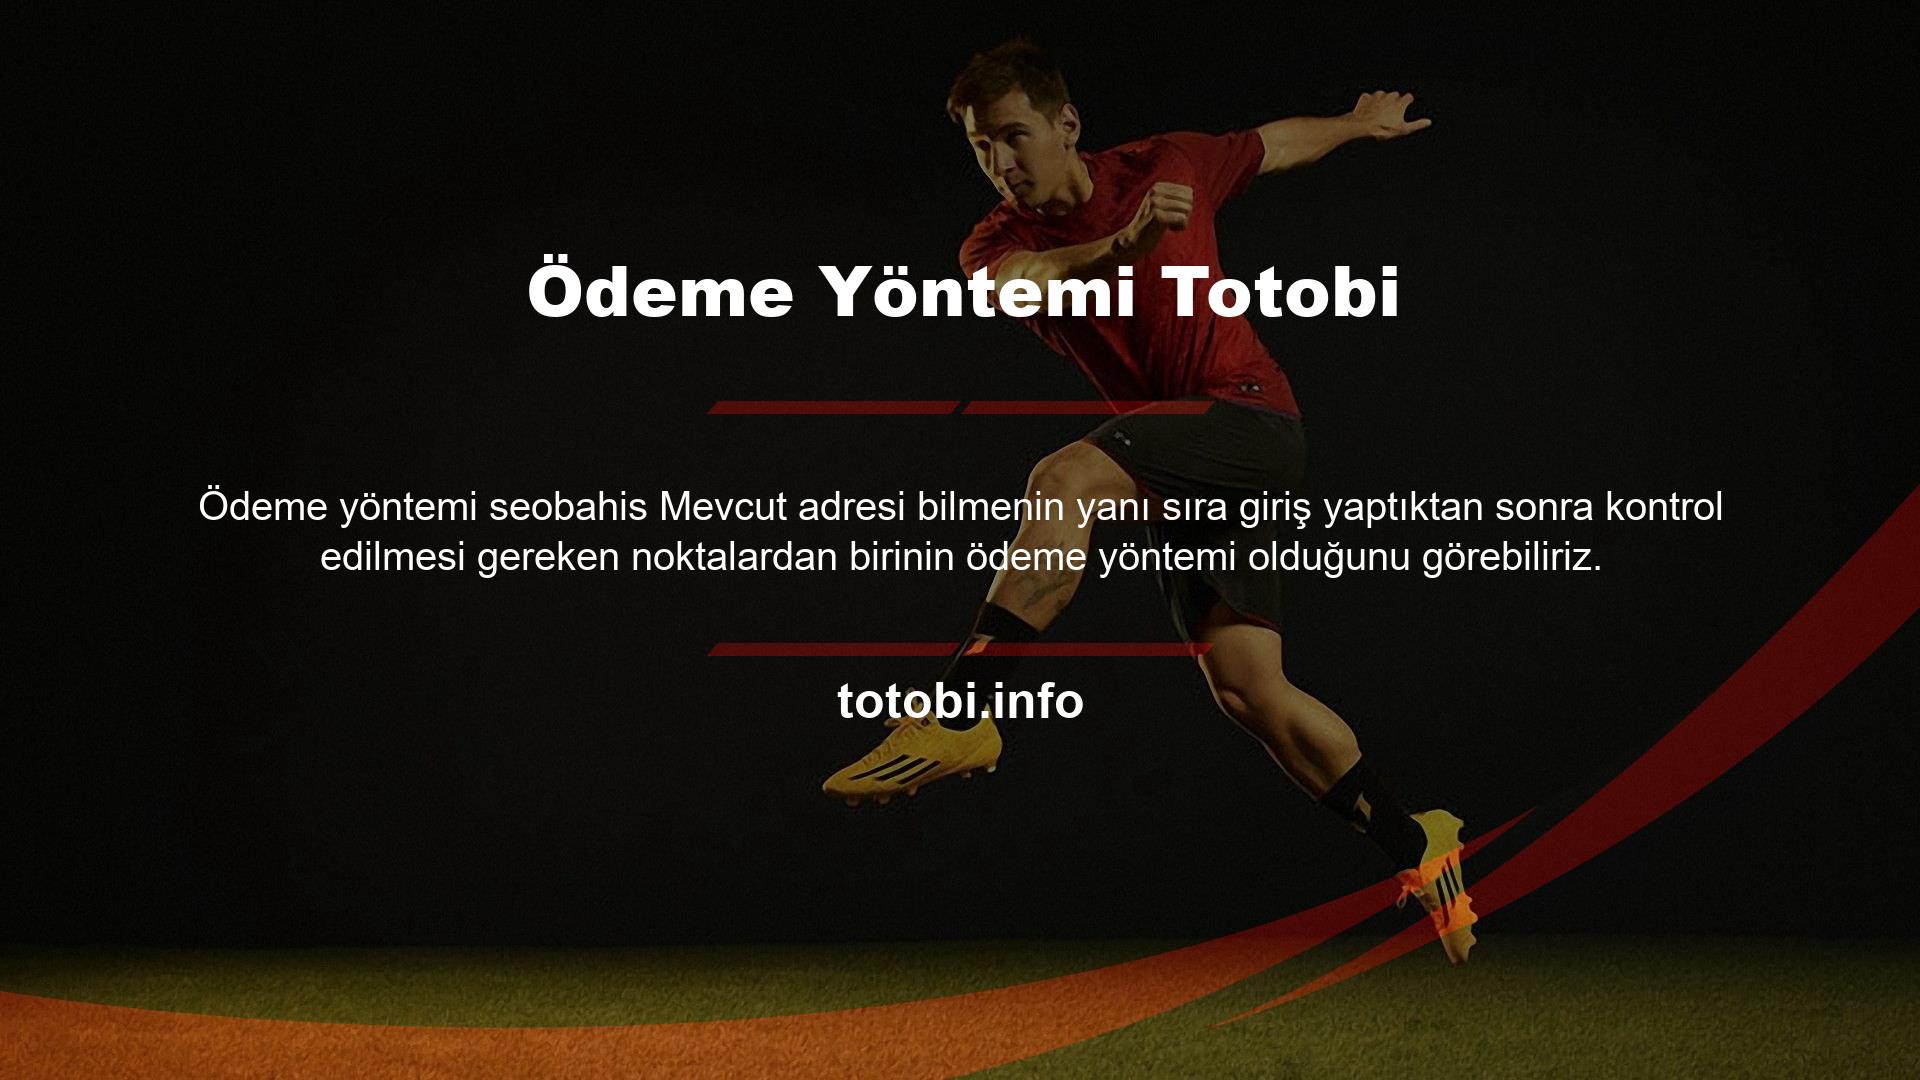 Totobi, çeşitli ödeme teknolojilerine sahip bir site olarak kabul edilebilir